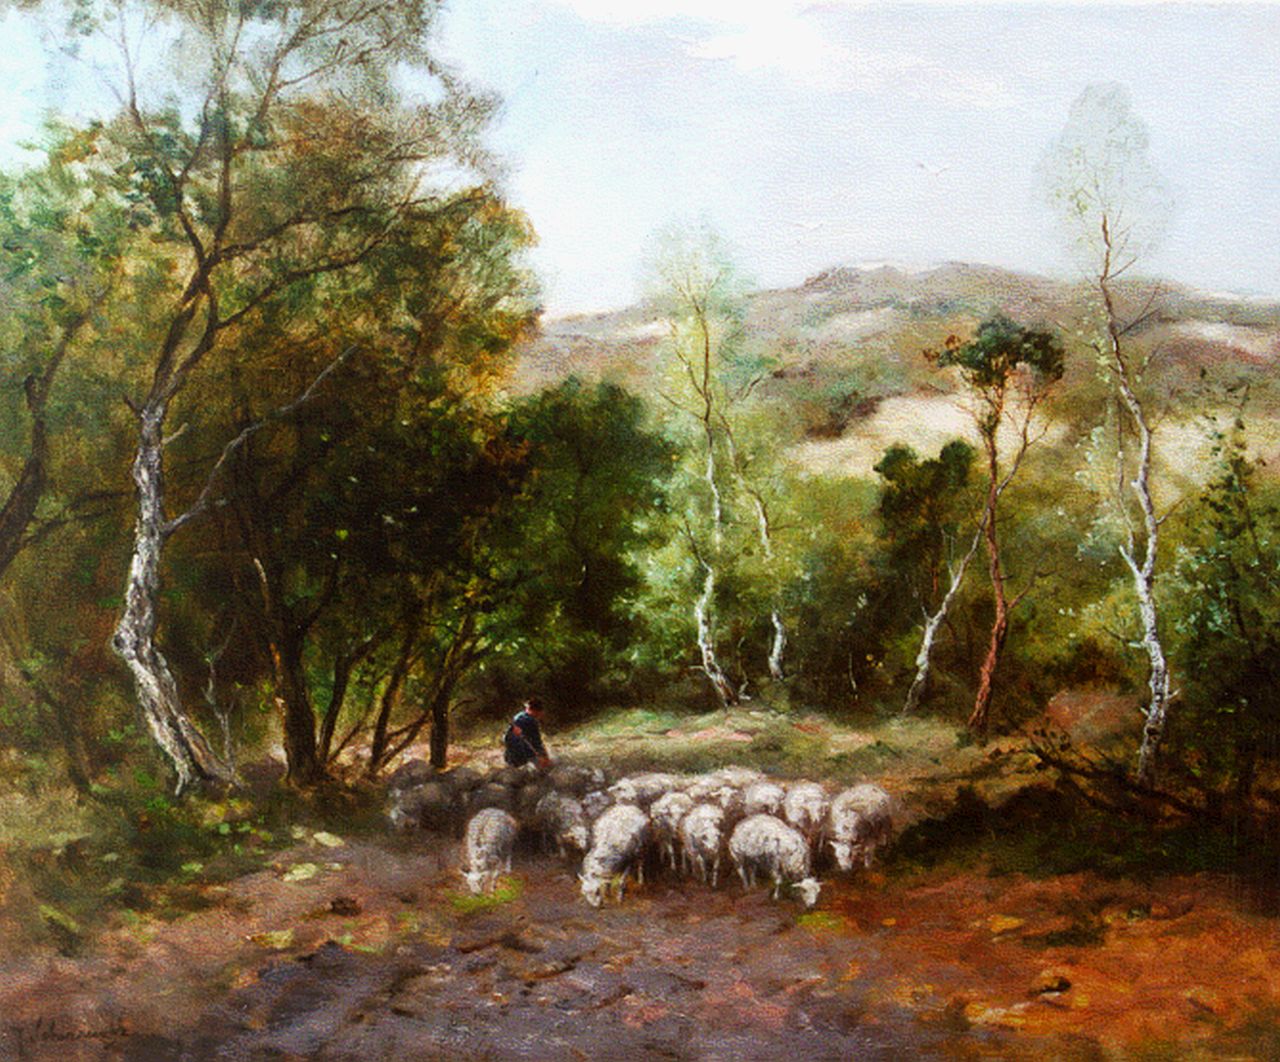 Scherrewitz J.F.C.  | Johan Frederik Cornelis Scherrewitz, Een herder met zijn kudde in de duinen, olieverf op doek 40,0 x 50,2 cm, gesigneerd linksonder